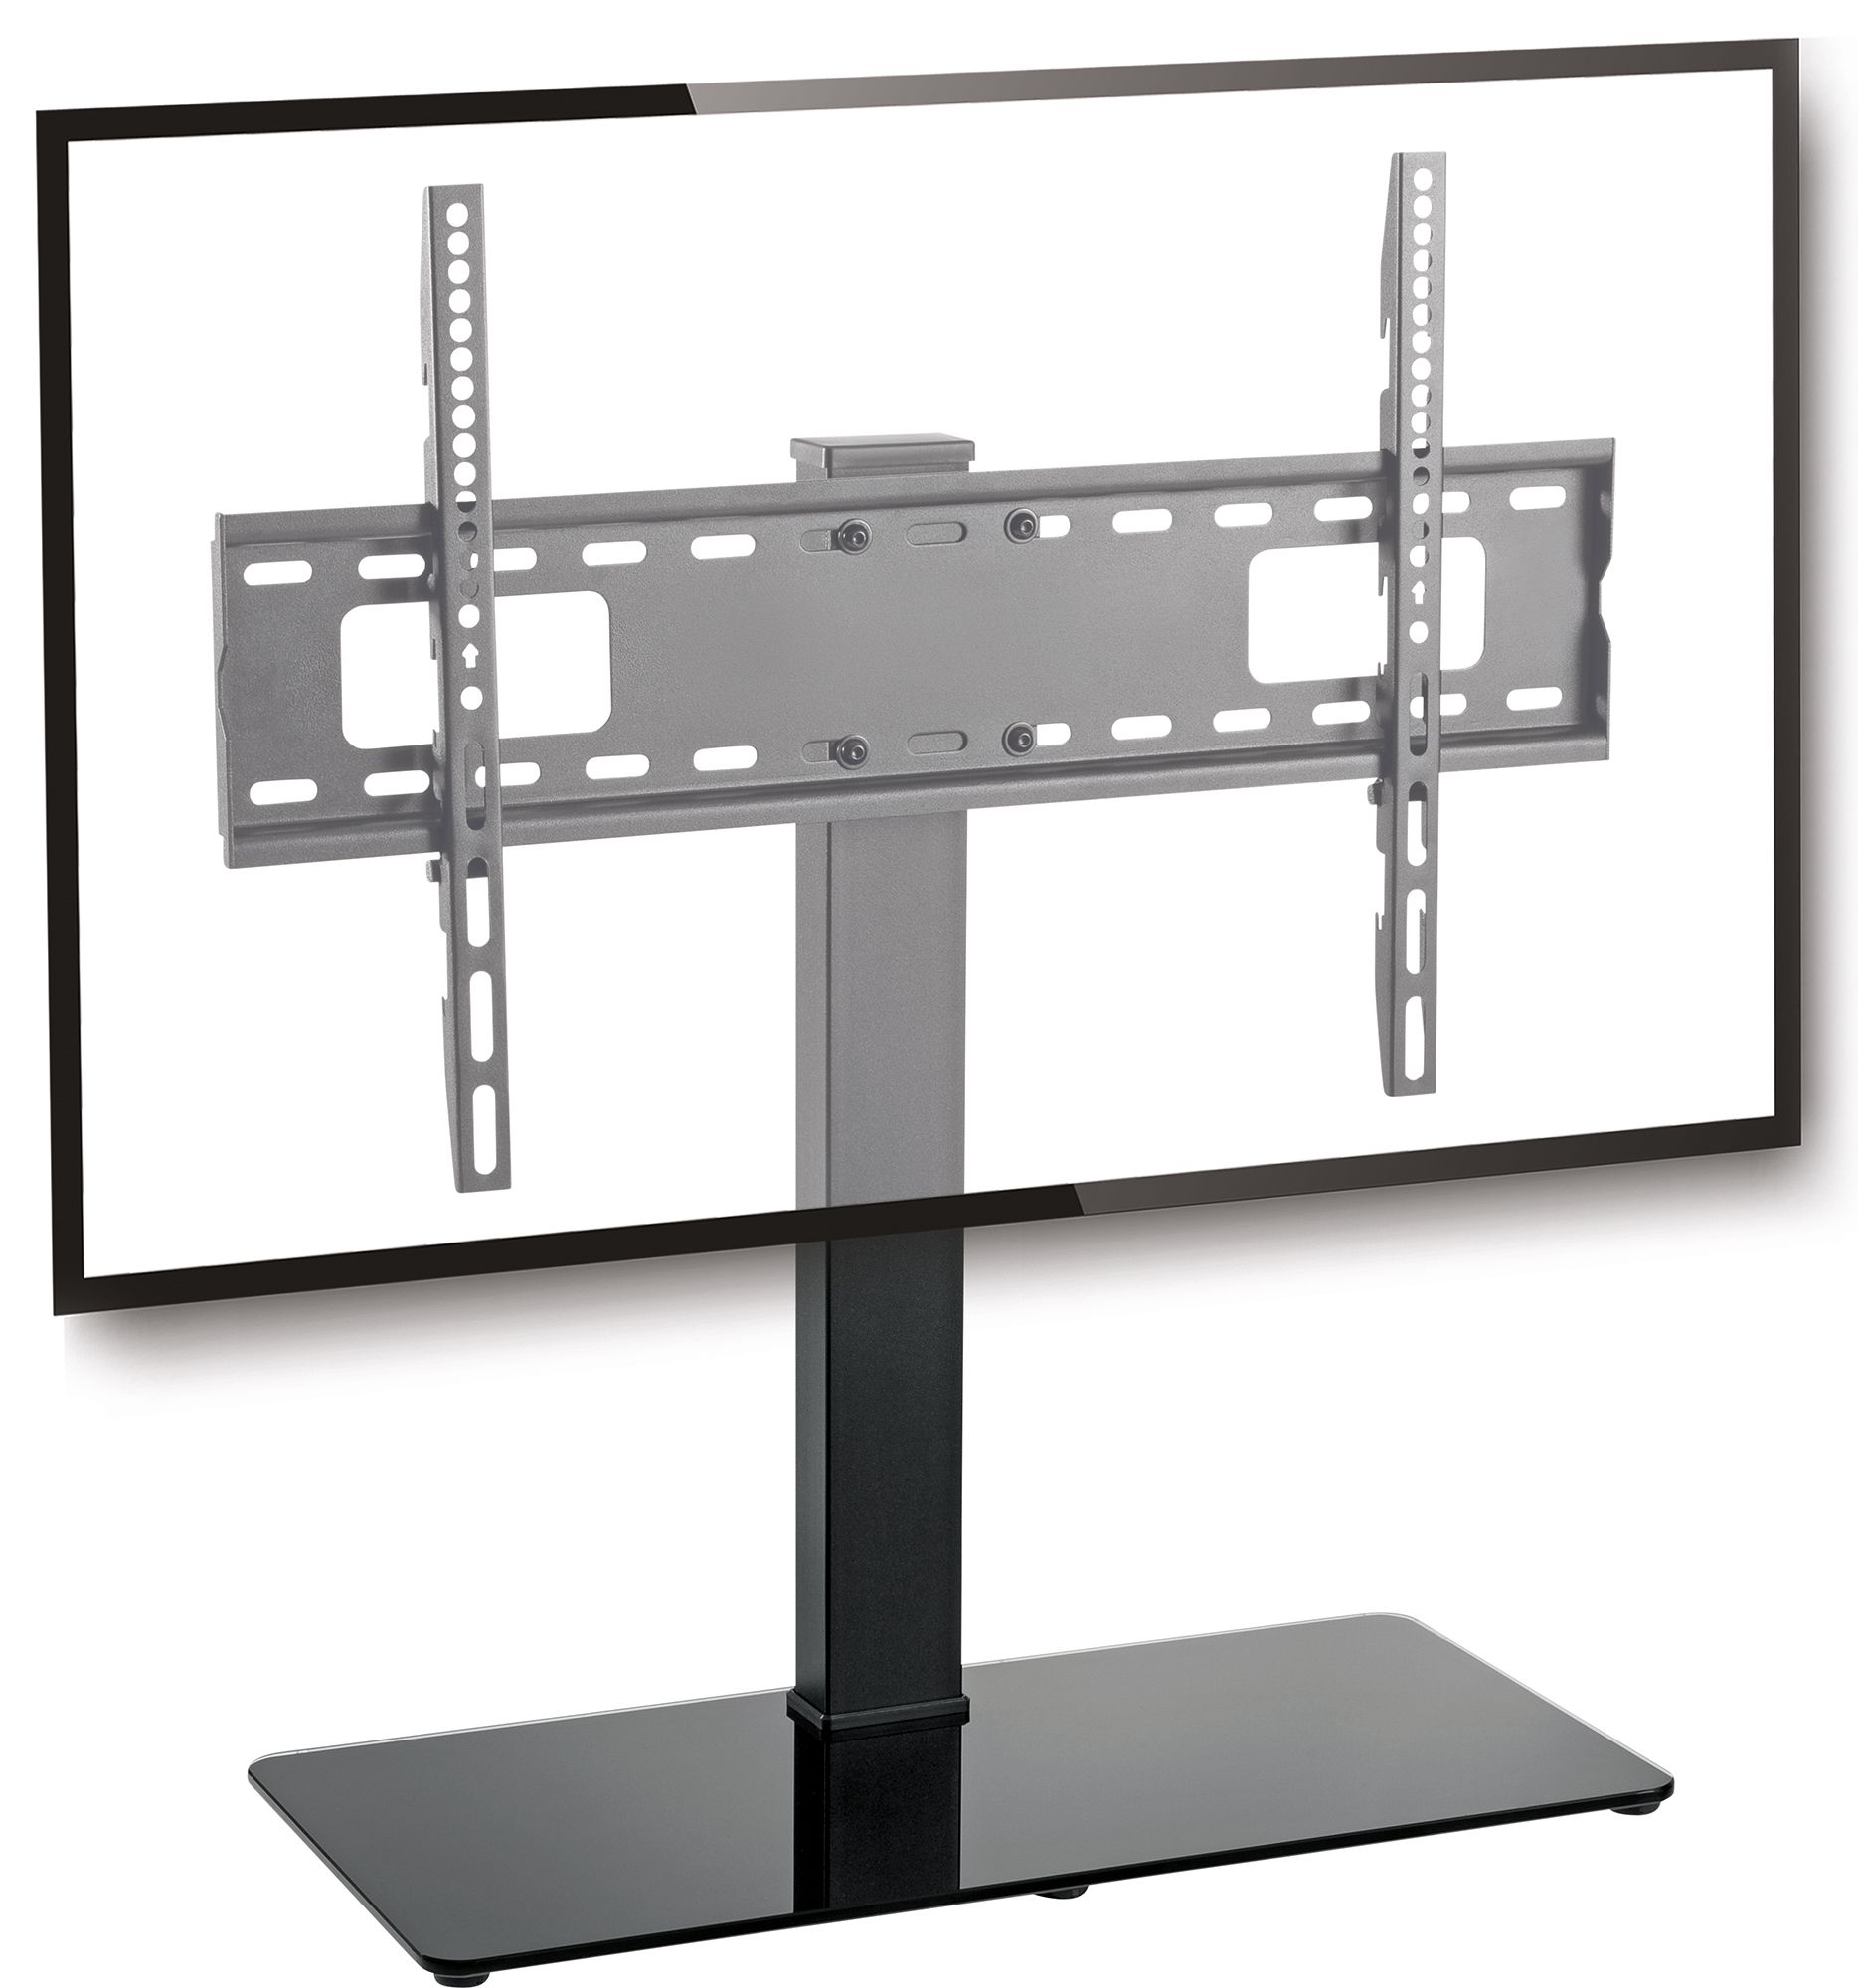 Standfuss für LED TVs bis 40 kg schwenkbar